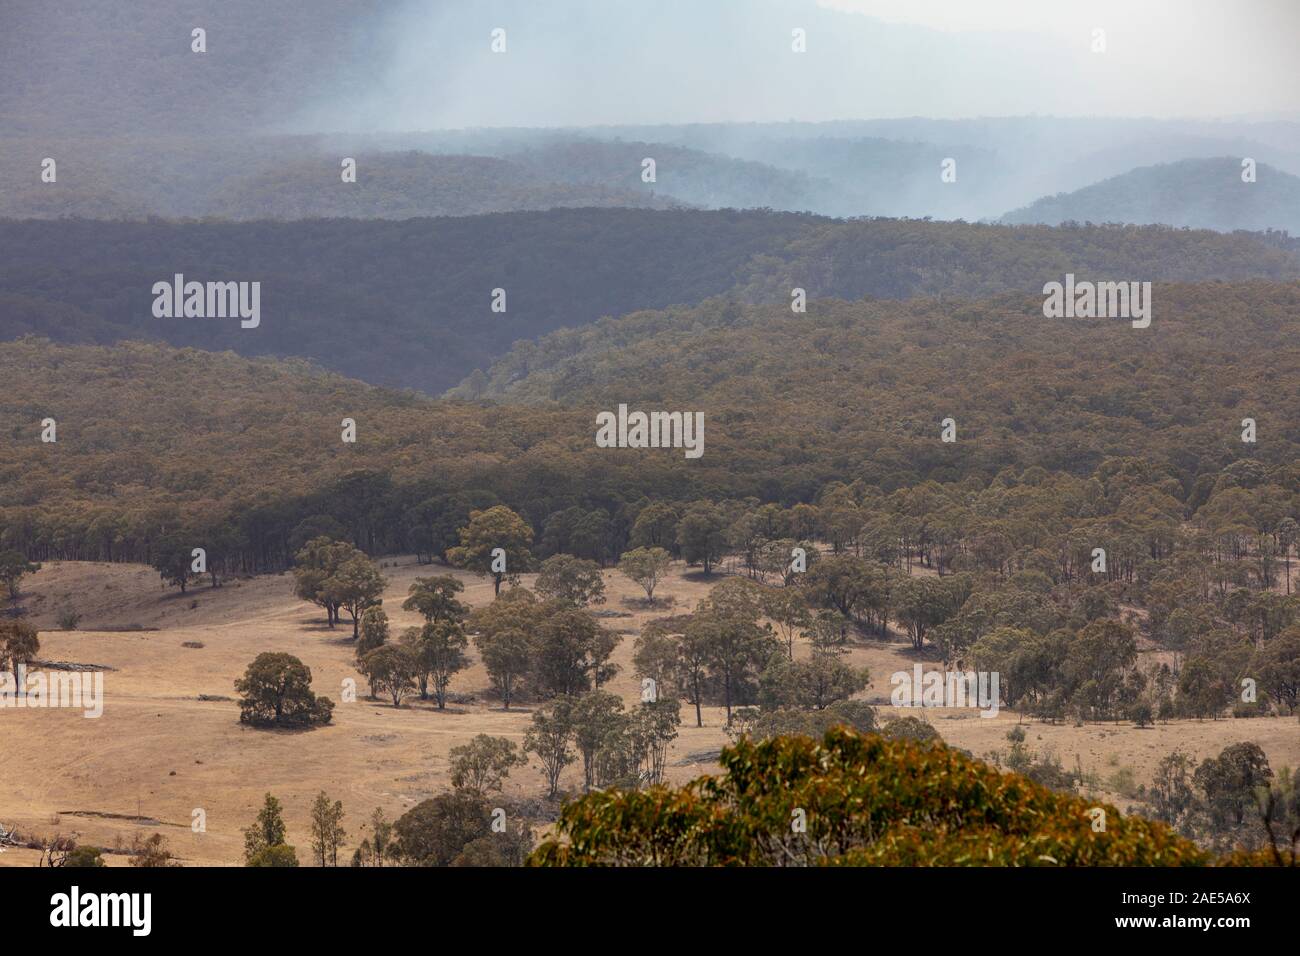 La fumée provenant des feux de brousse dans la brume Capertee Valley National Park, New South Wales, Australie Banque D'Images